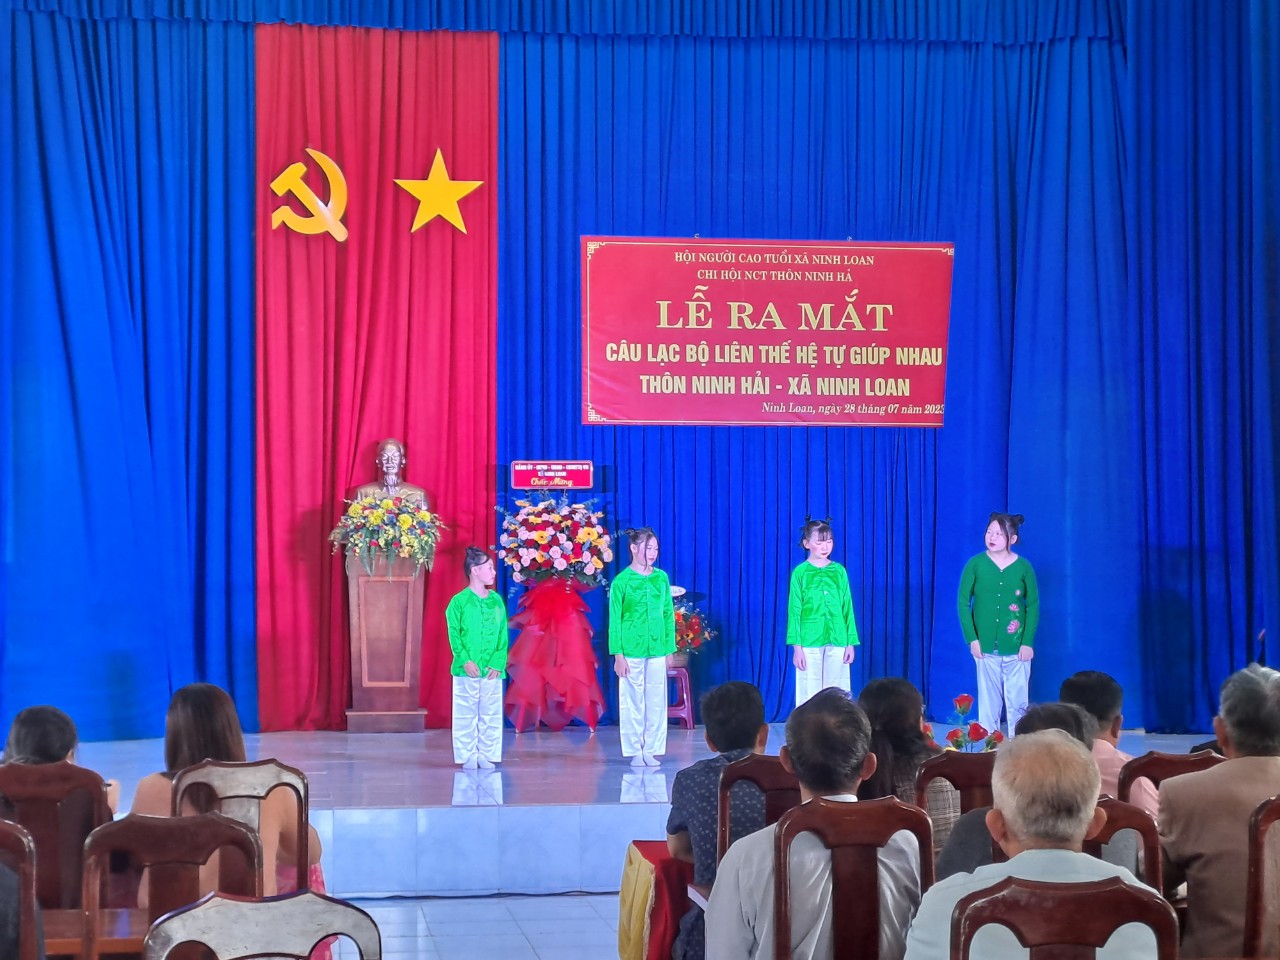 Thôn Ninh Hải ra mắt CLB "Liên thế hệ tự giúp nhau" 